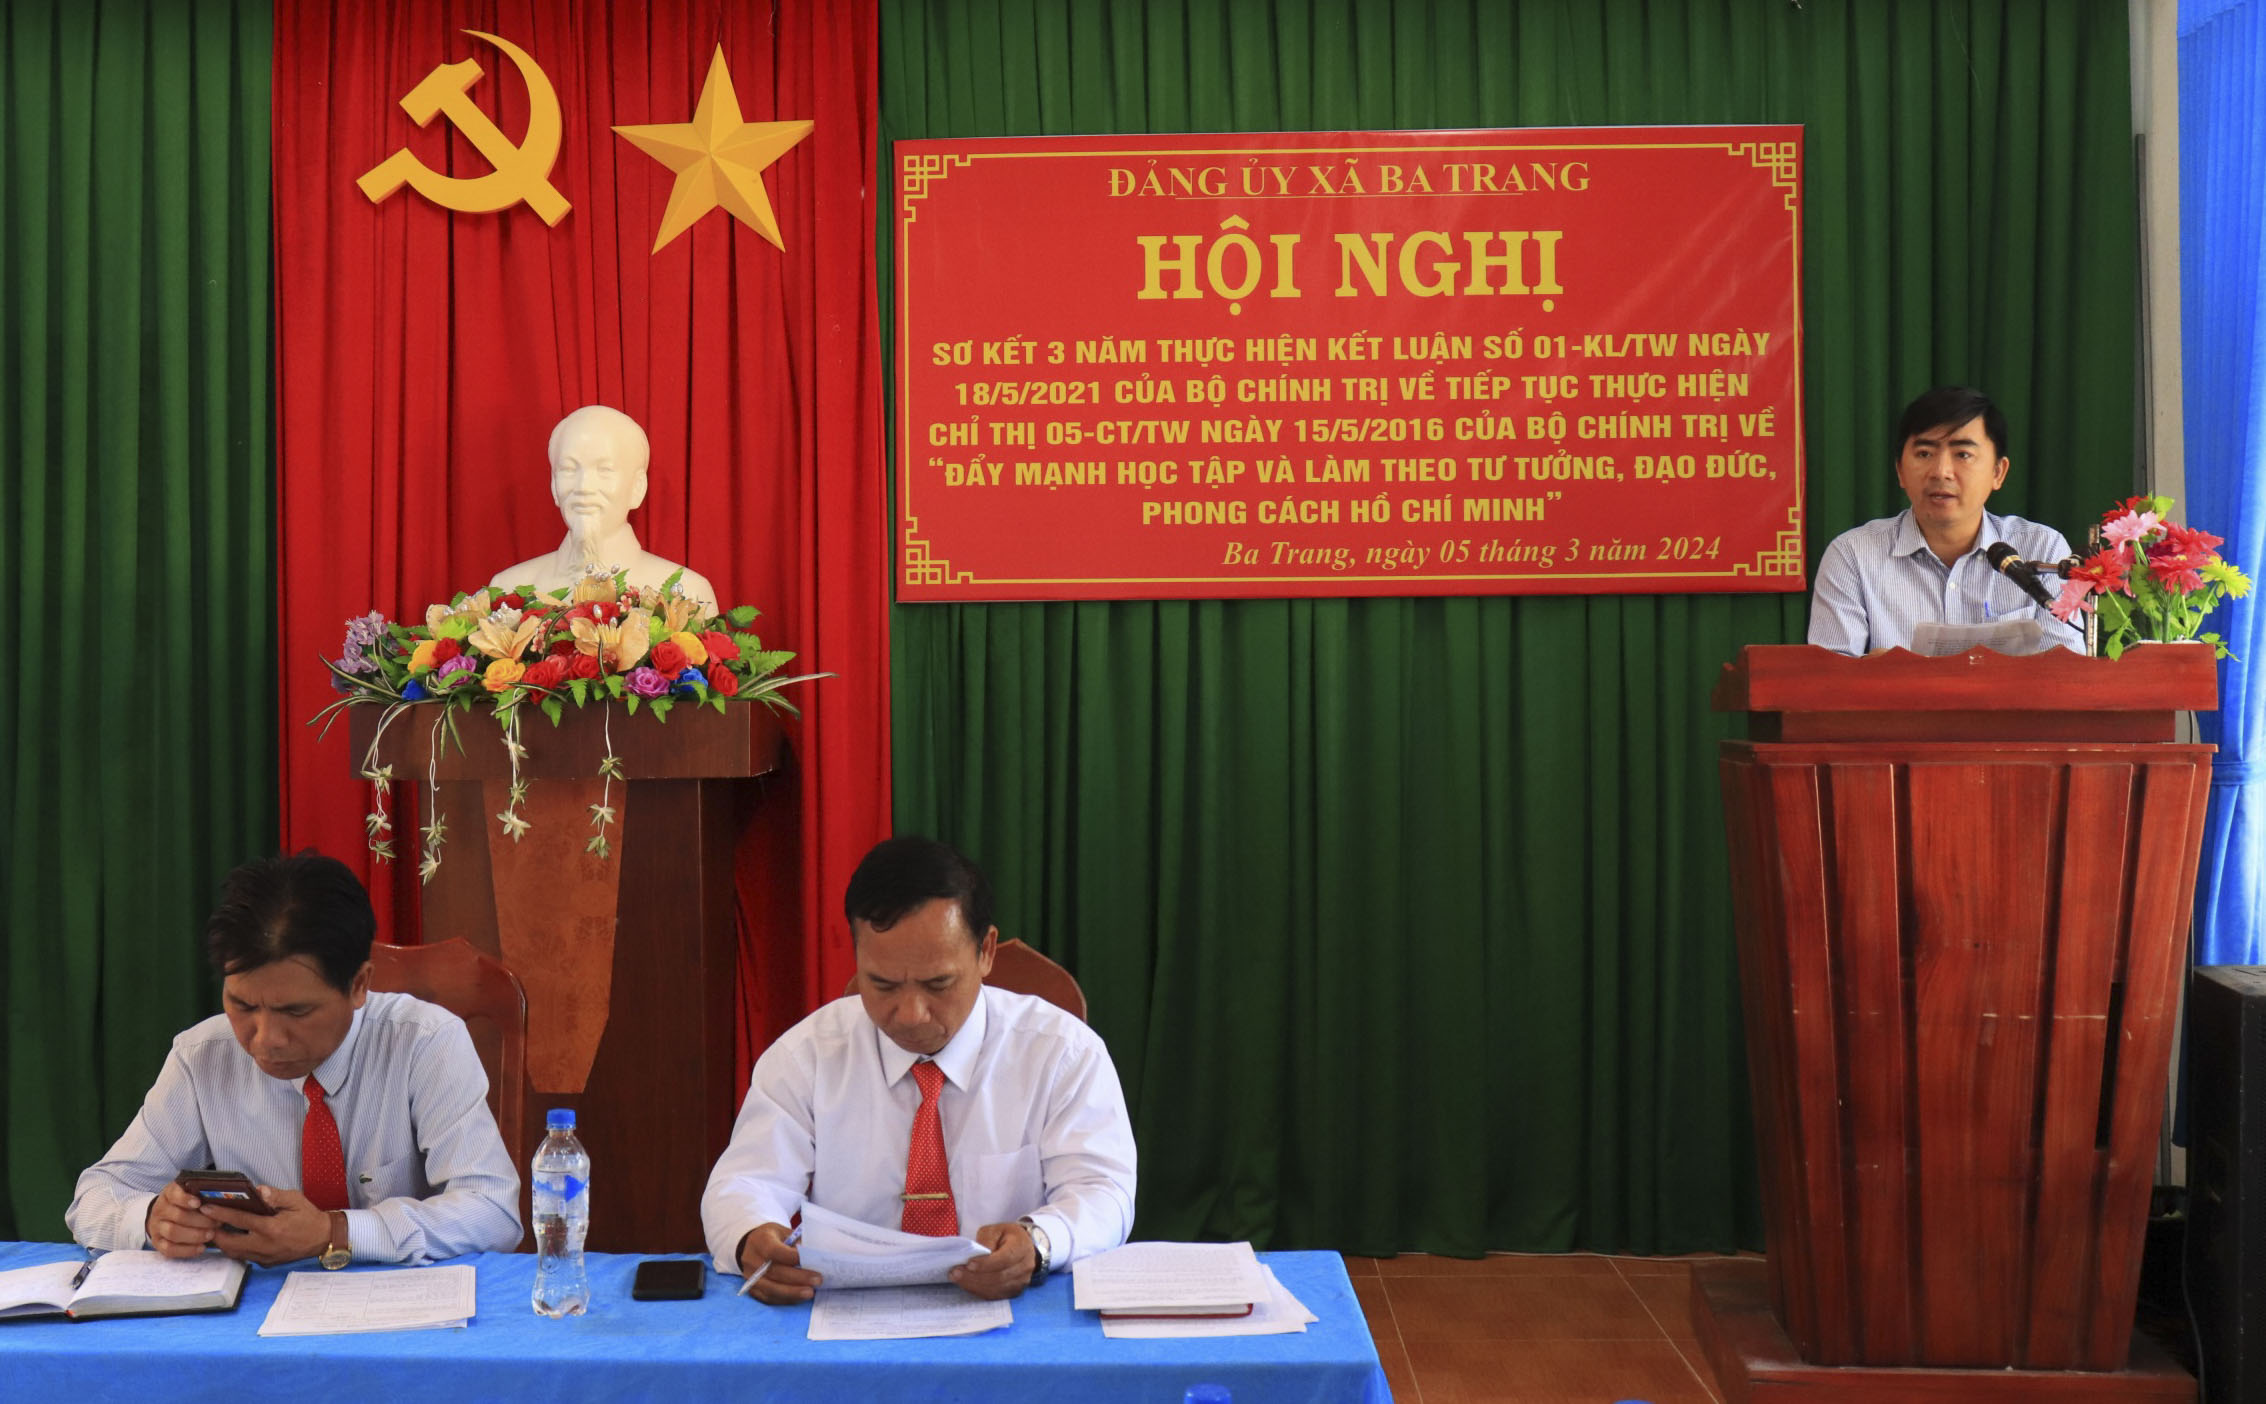 Đại biểu đơn vị Trường PTDTBT TH&THCS Ba Trang báo cáo tham luận trước Hội nghị